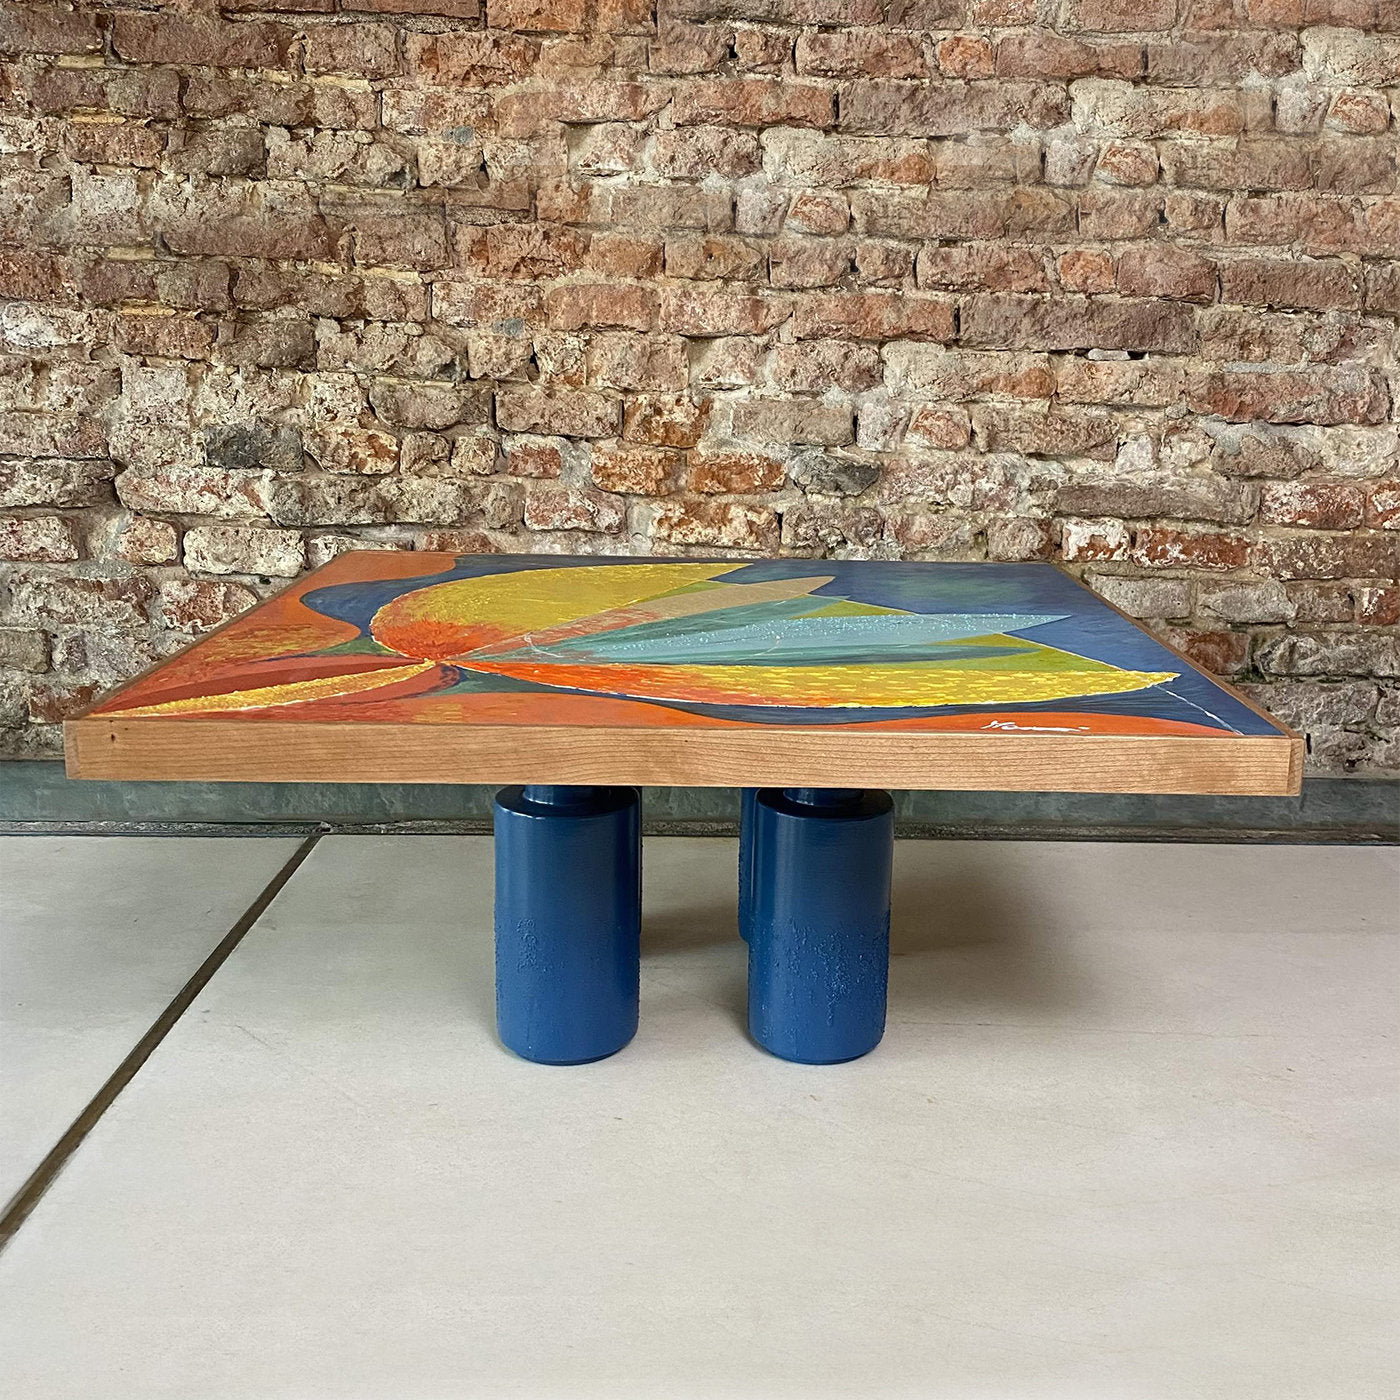 Atlantide Square Coffee Table by Mascia Meccani - Alternative view 4